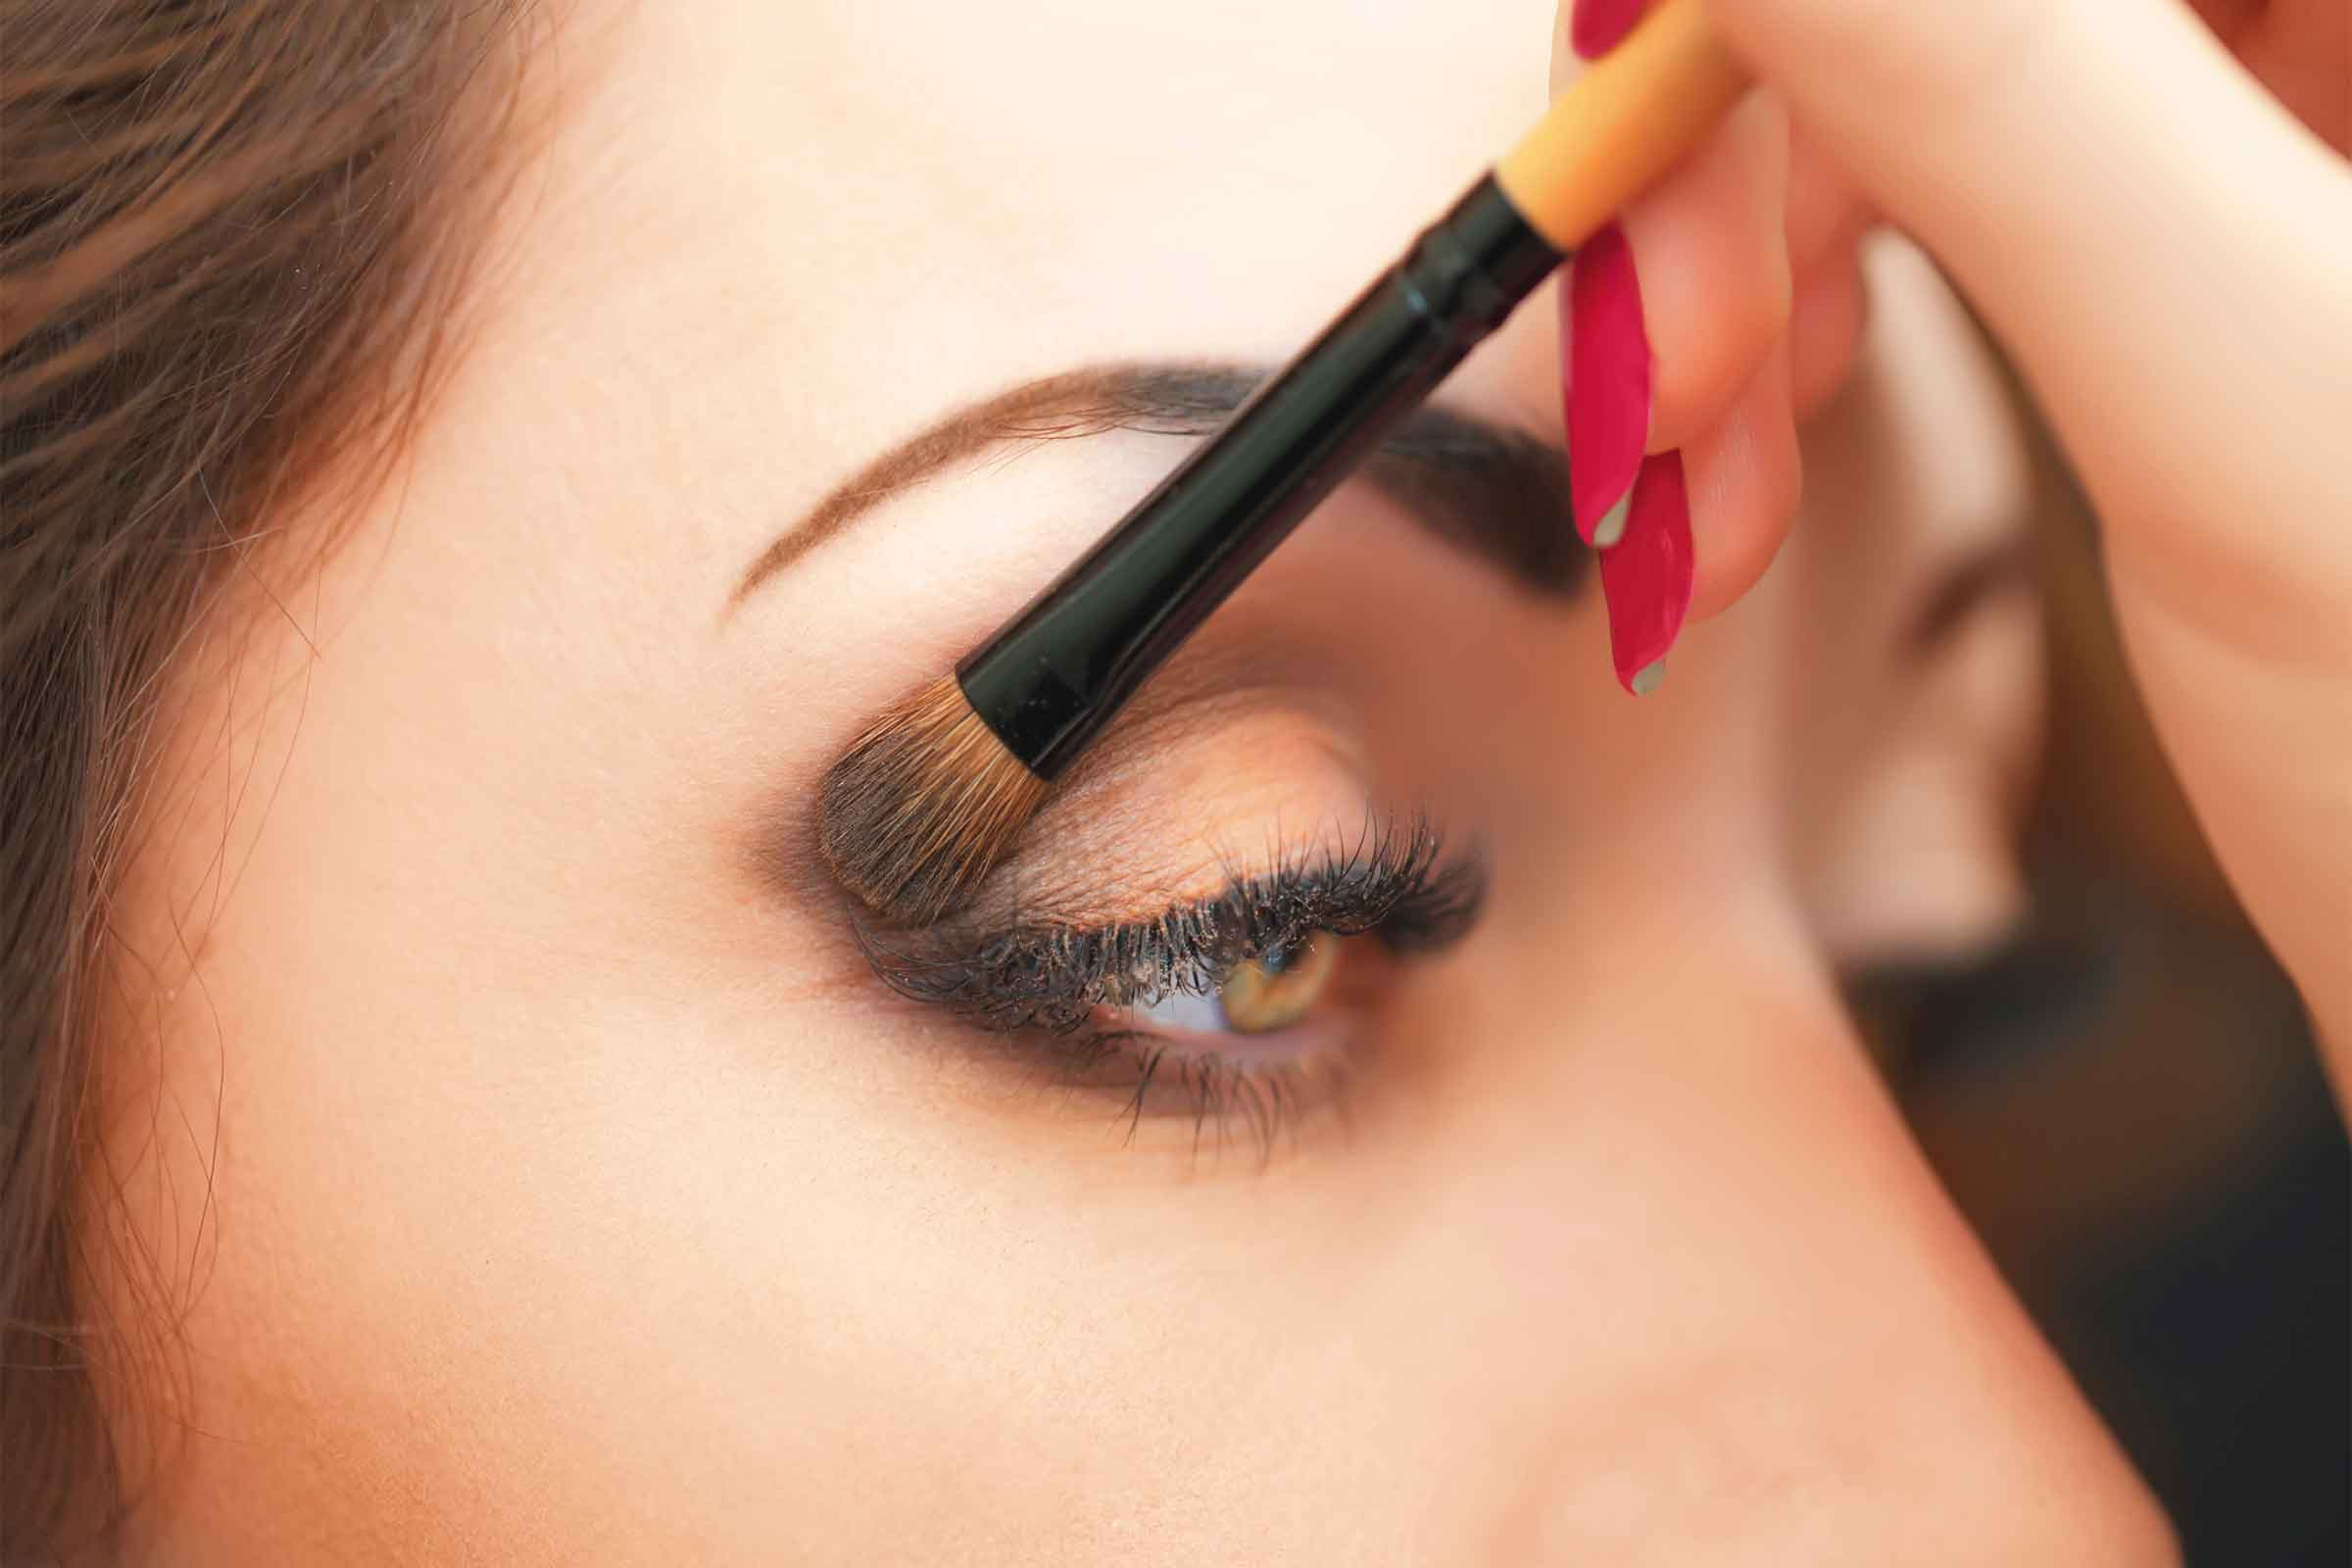 Simple Dark Eye Makeup Eye Makeup Tips 7 Ways To Make Your Eyes Pop Readers Digest